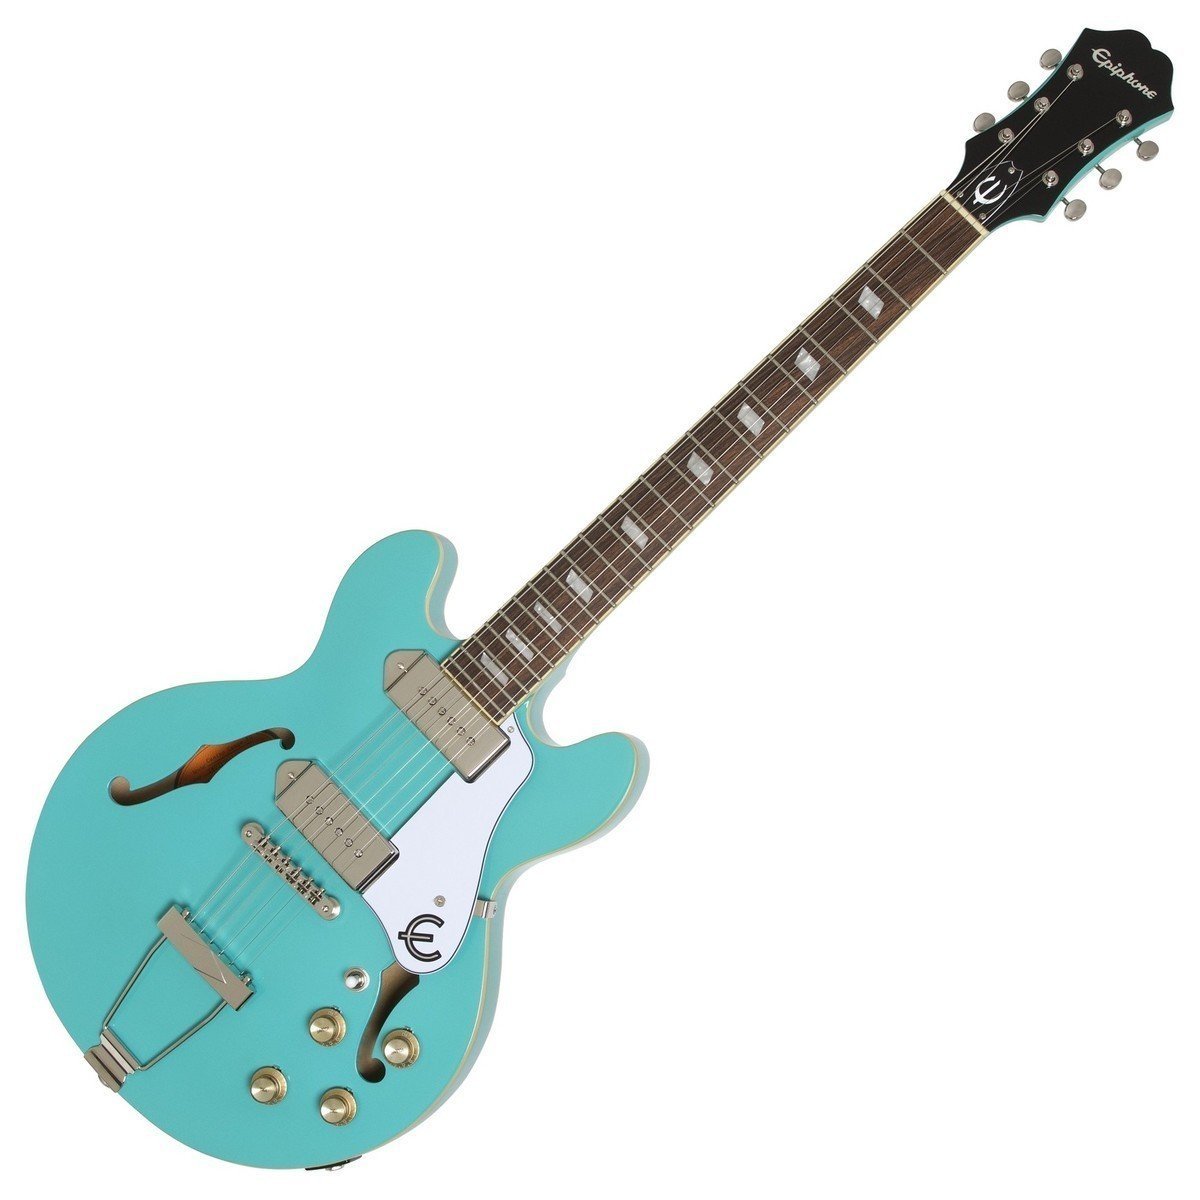 Semiakustická kytara Epiphone Casino Coupe Turquoise